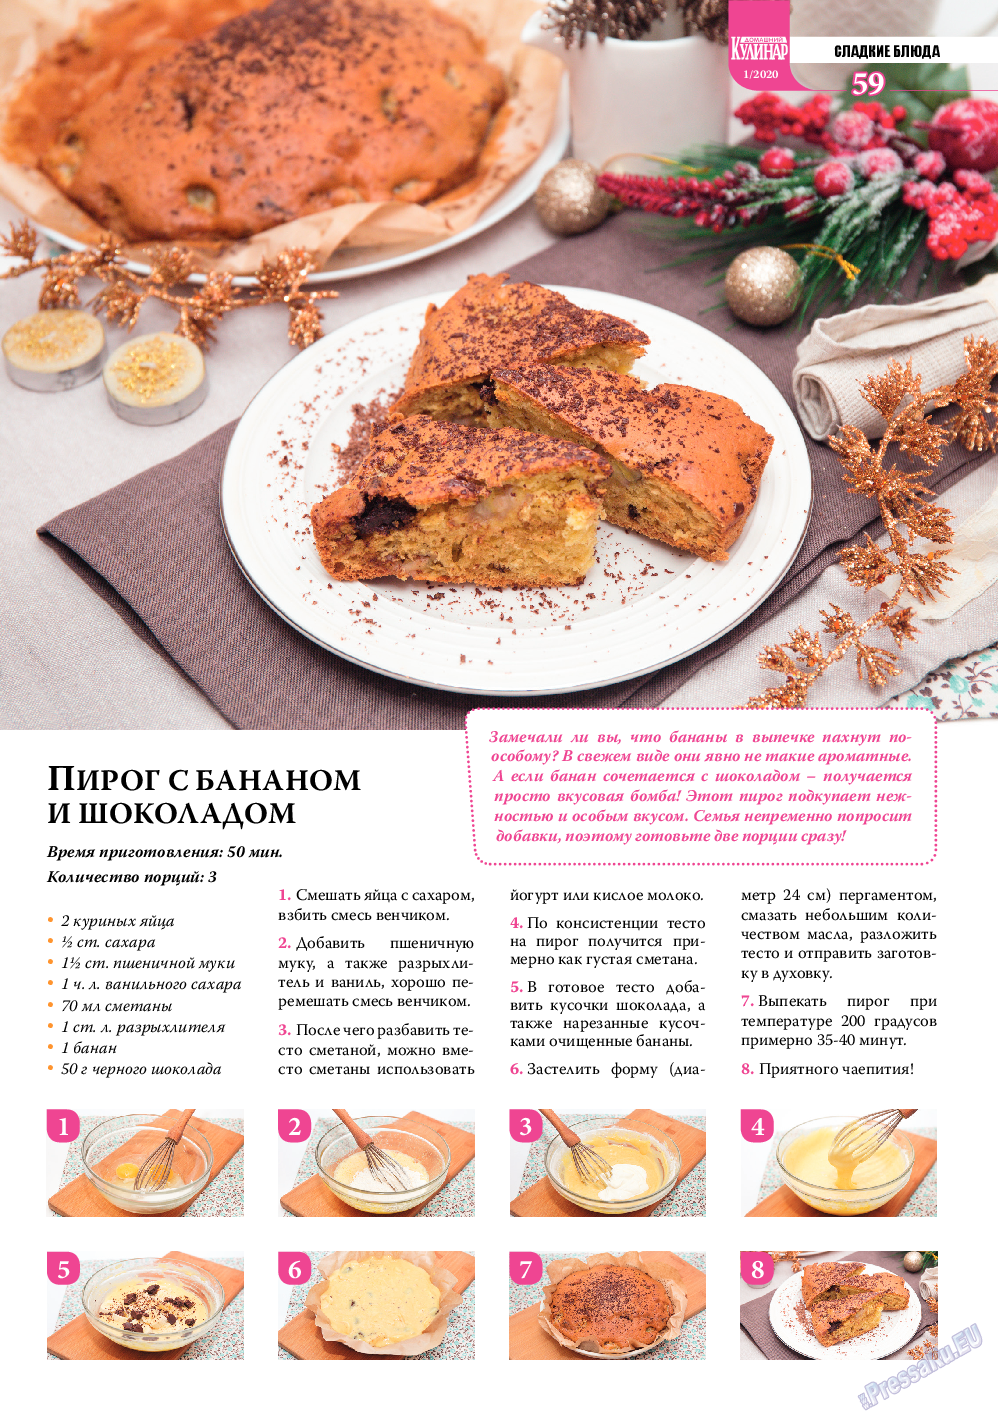 Домашний кулинар, журнал. 2020 №1 стр.59